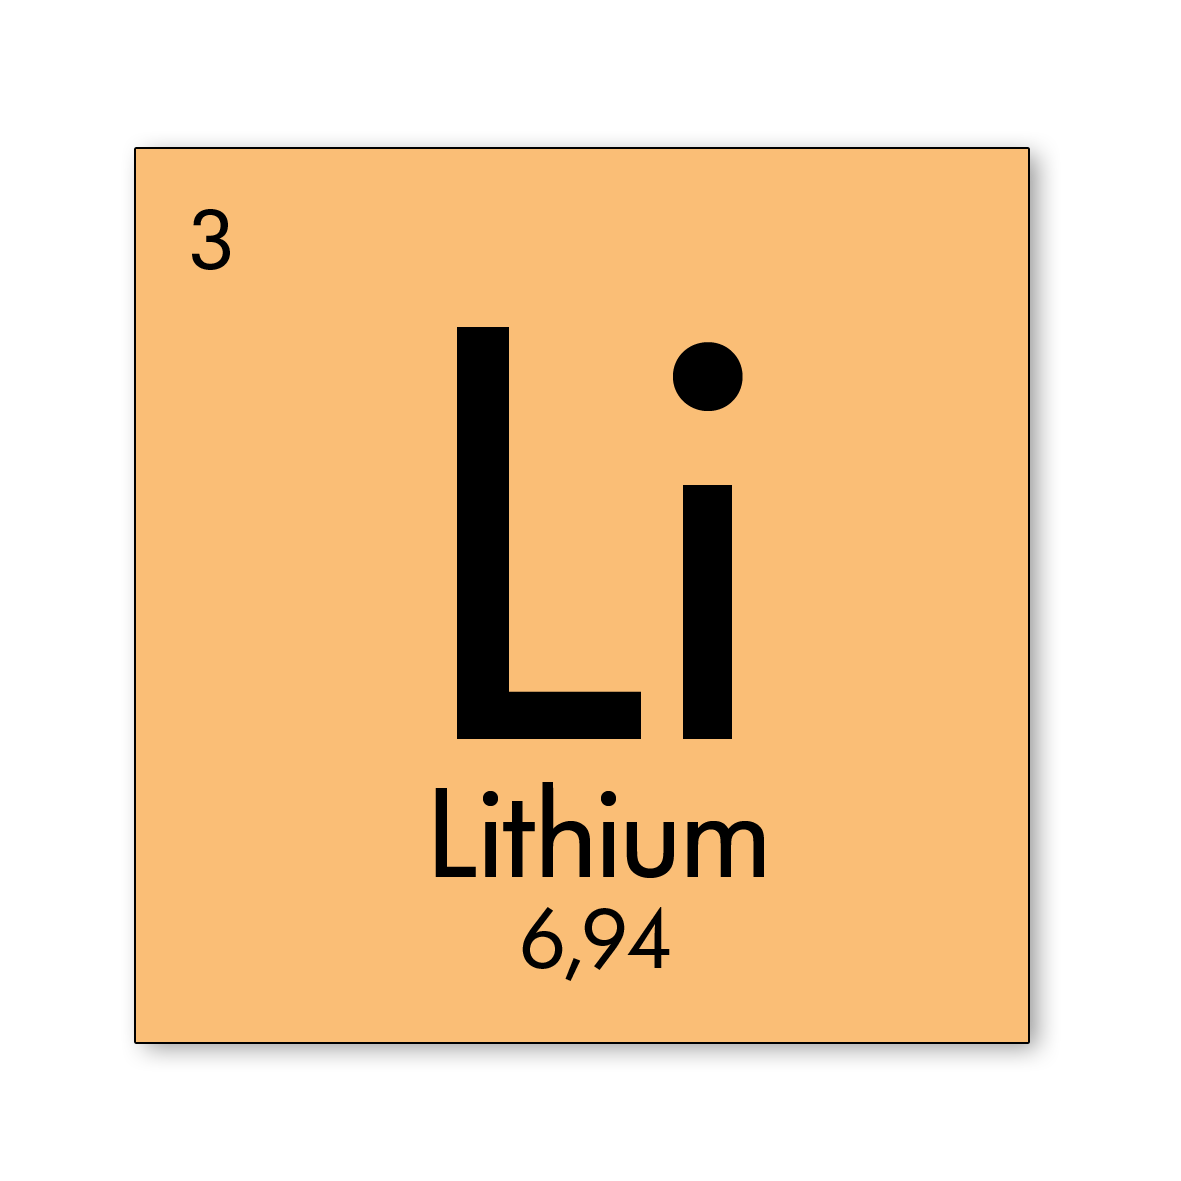 Element lithium 01 2018